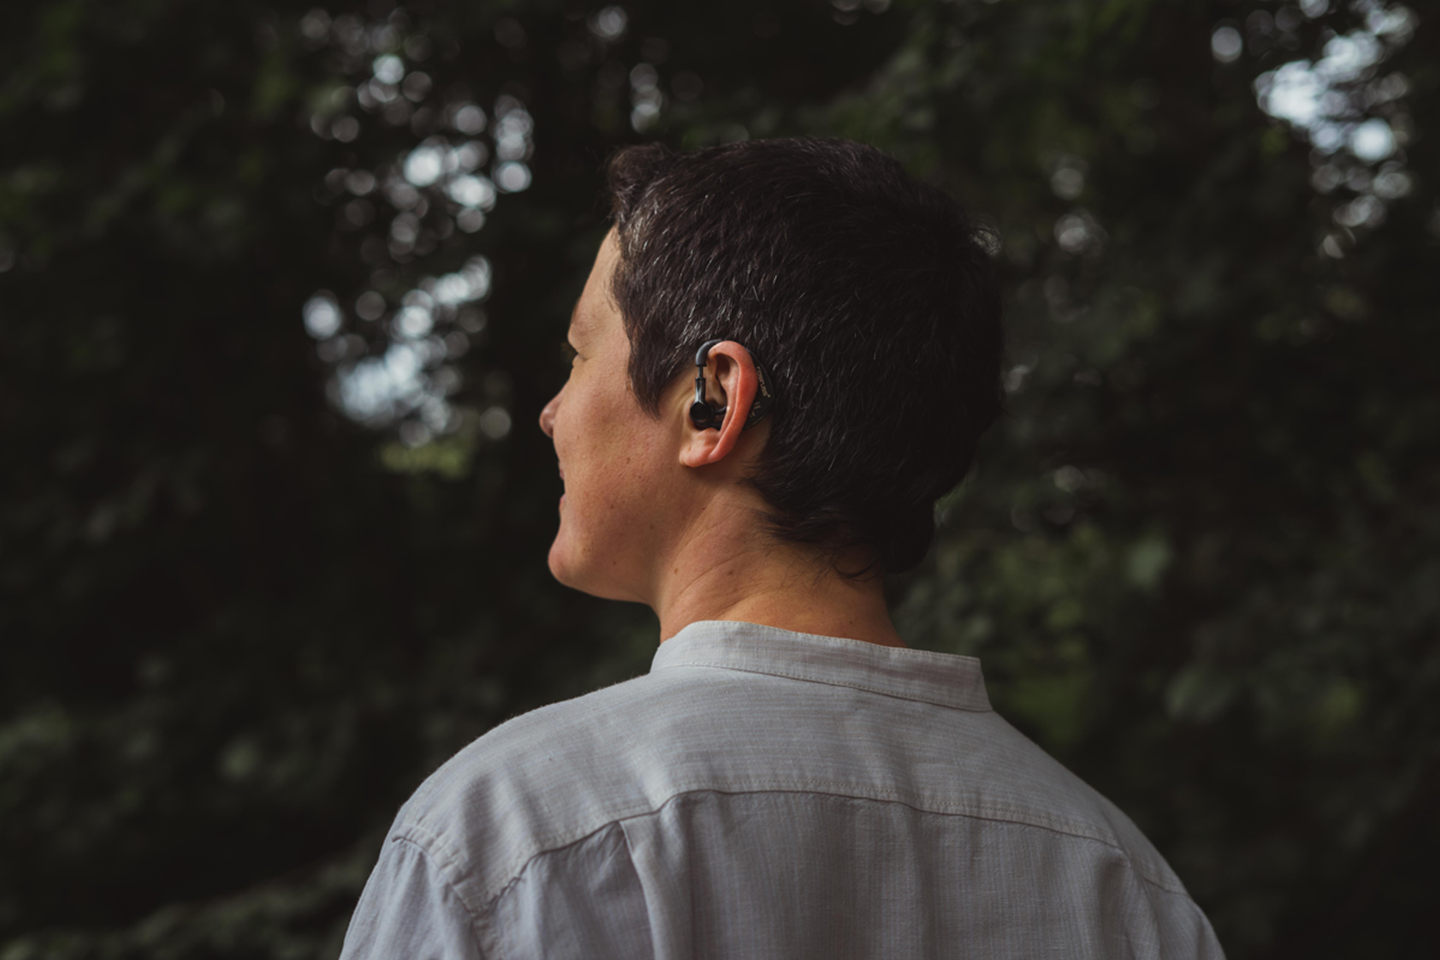  Der Im-Ohr-Sensor der Cosinuss GmbH kann wie ein Hörgerät im Ohr befestigt werden, misst kontinuierlich verschiedene Vitalparameter und wird im Projekt »MOND« durch die Komponente der EEG-Erfassung erweitert.